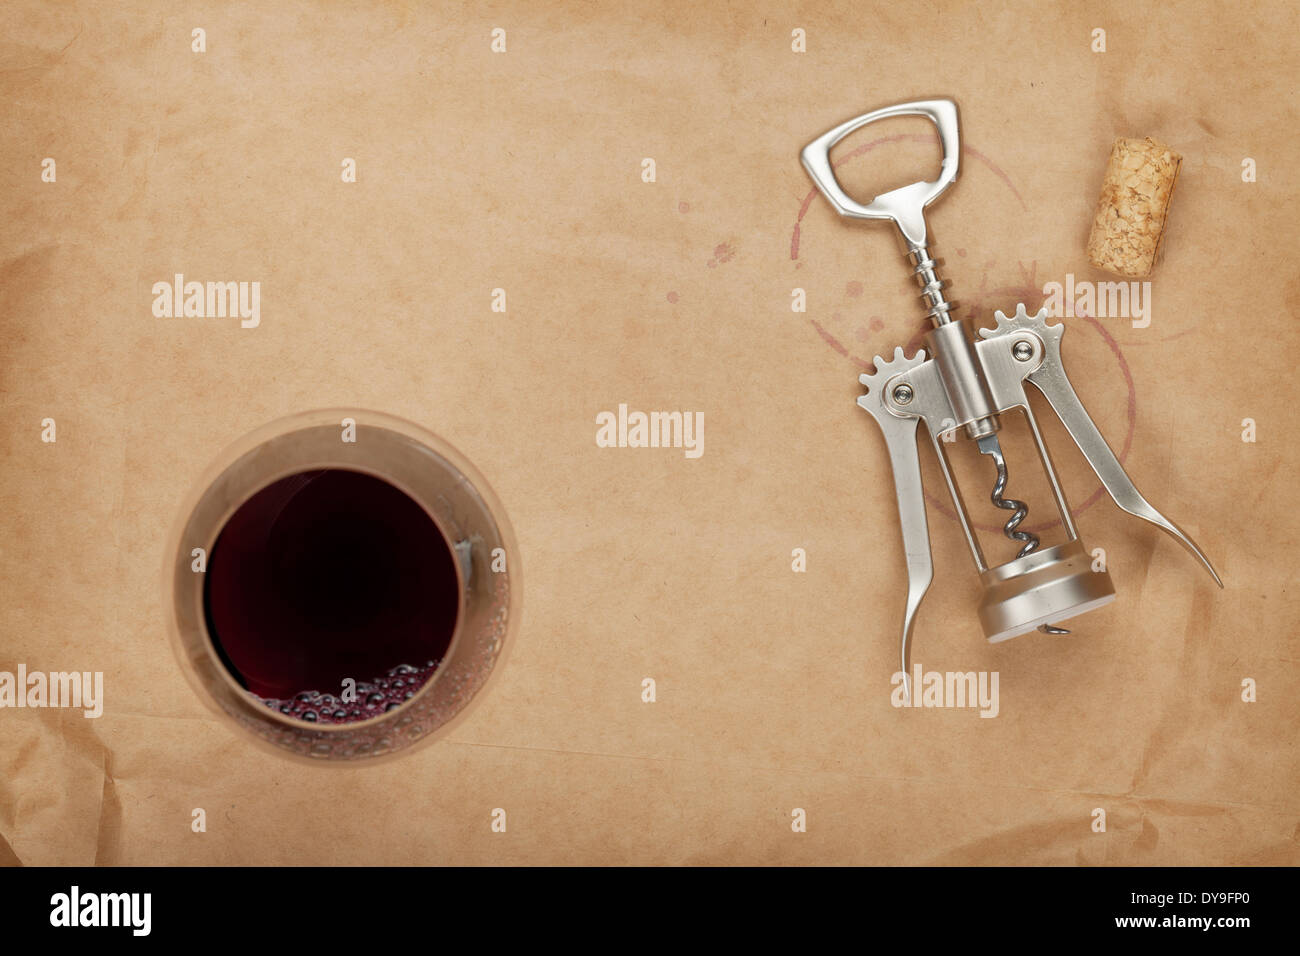 Verre à vin tire-bouchon, le liège et les taches de vin rouge sur fond de papier brun Banque D'Images